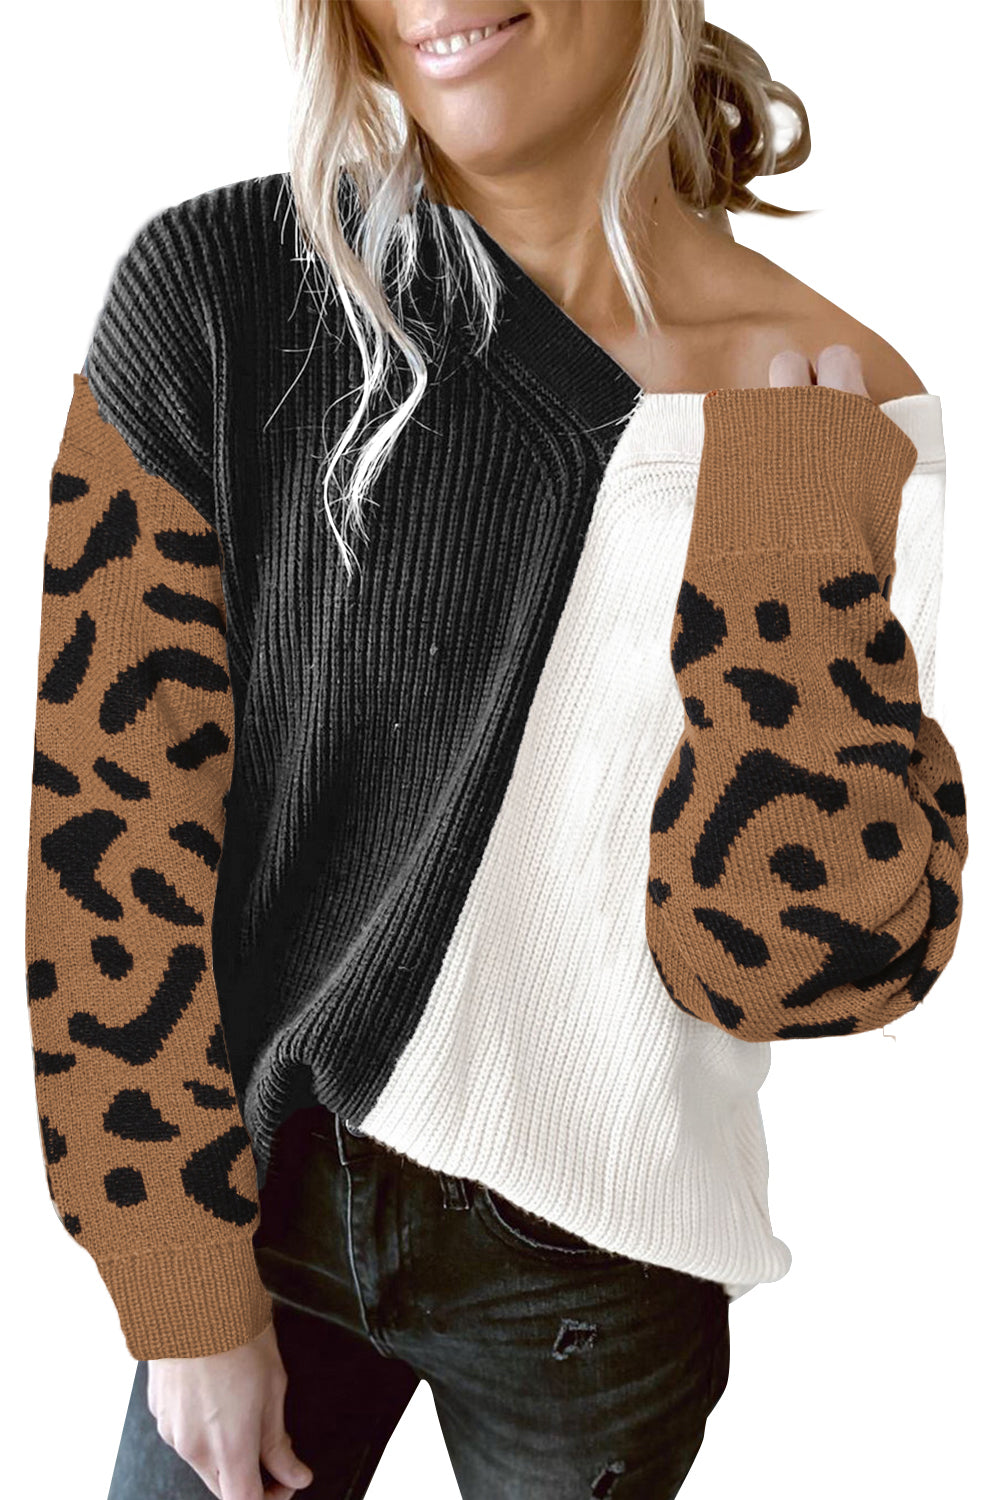 Pulover s V izrezom kontrastne boje s uzorkom leoparda